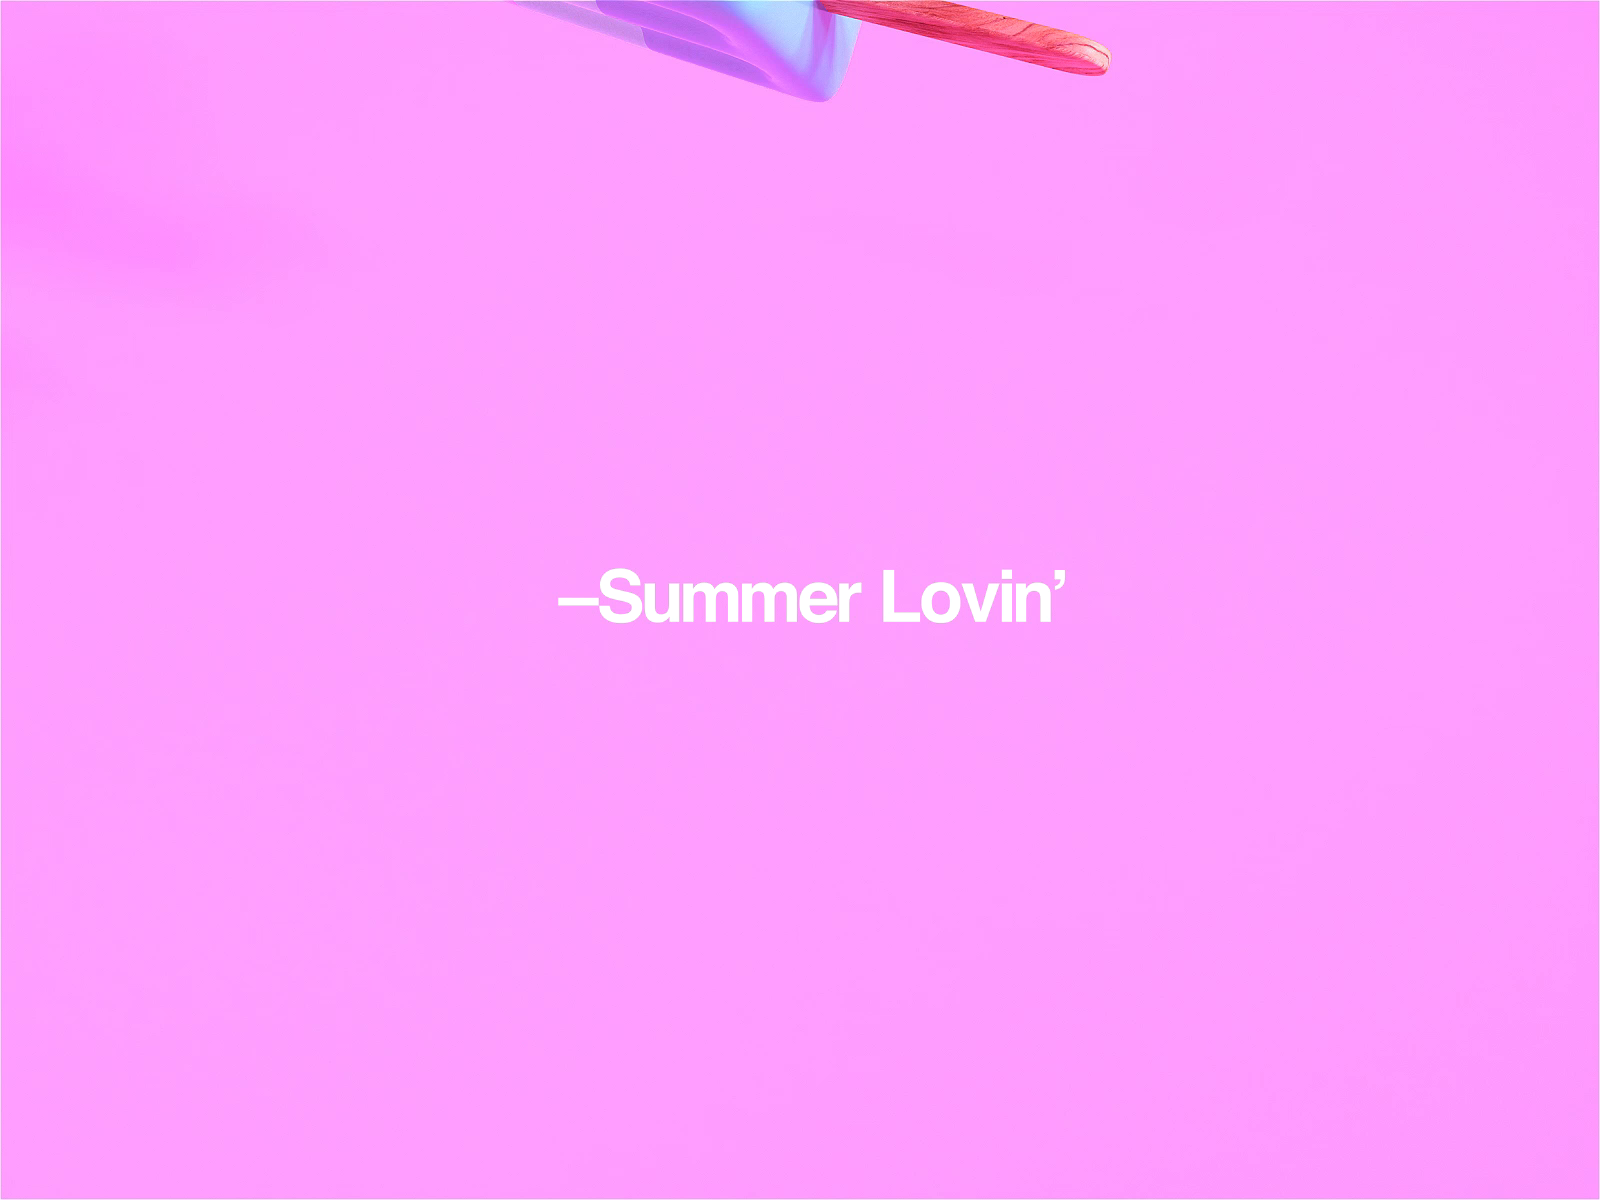 –Summer Lovin' by MadeByStudioJQ on Dribbble